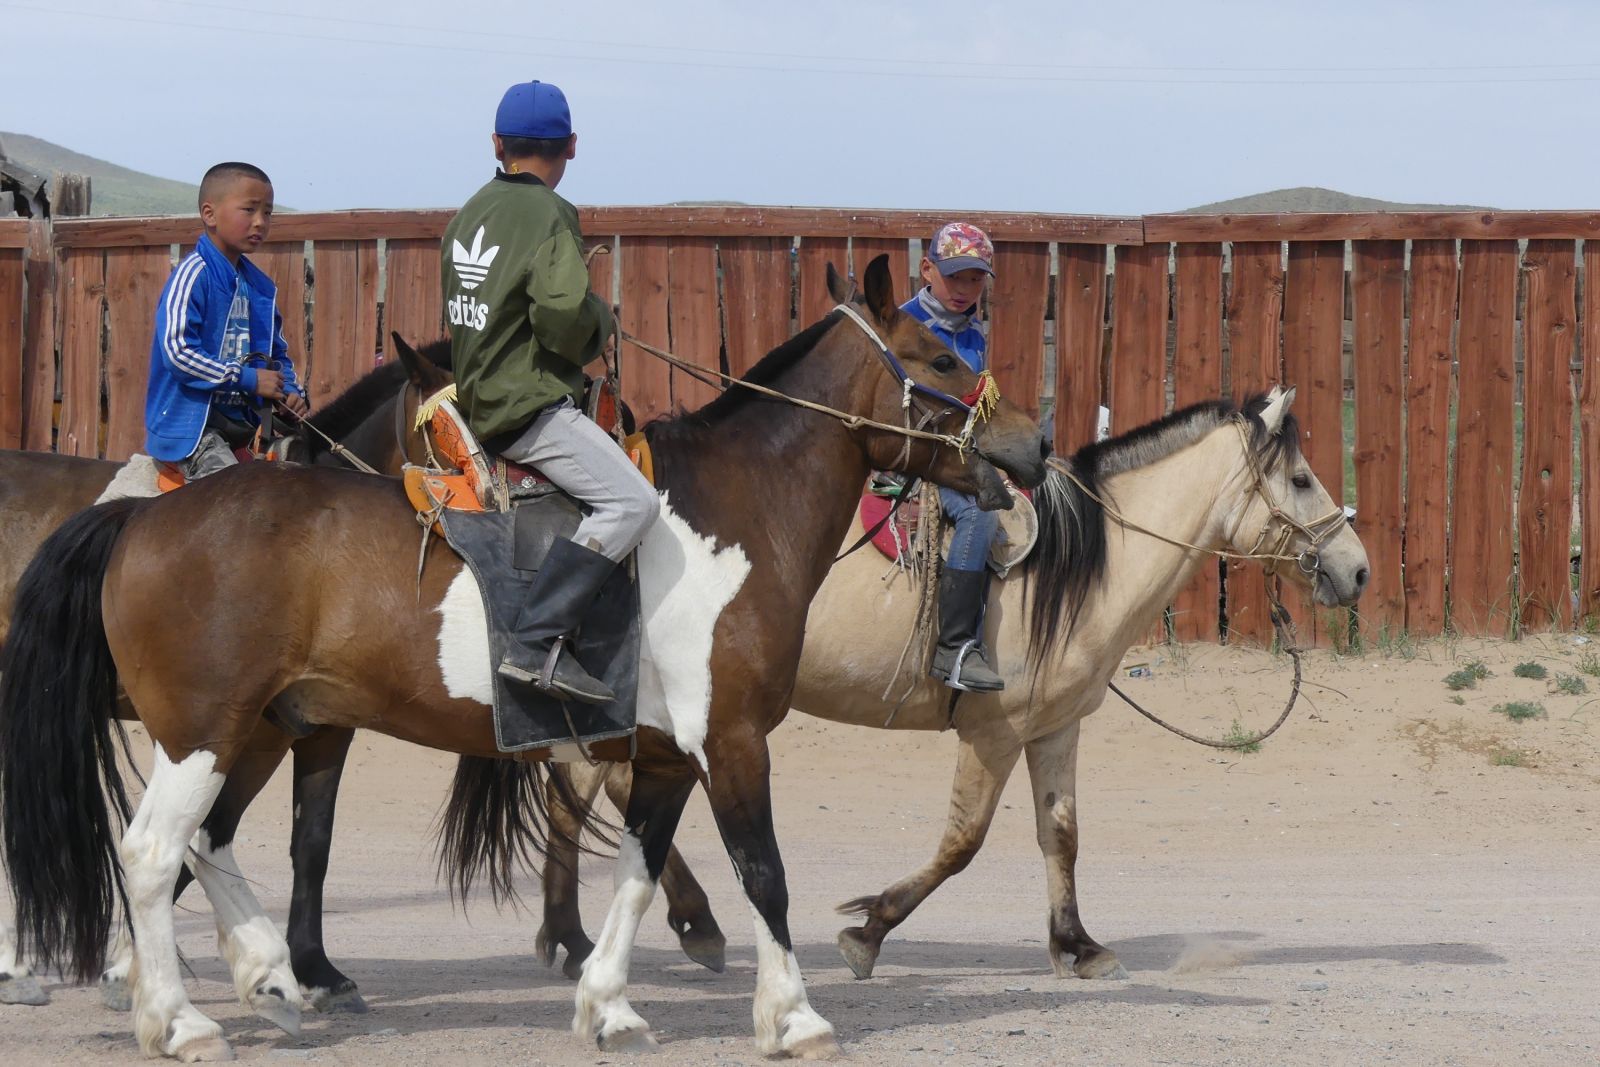 Jungen auf den Pferden – meist sind diese die Jockeys bei den Pferderennen